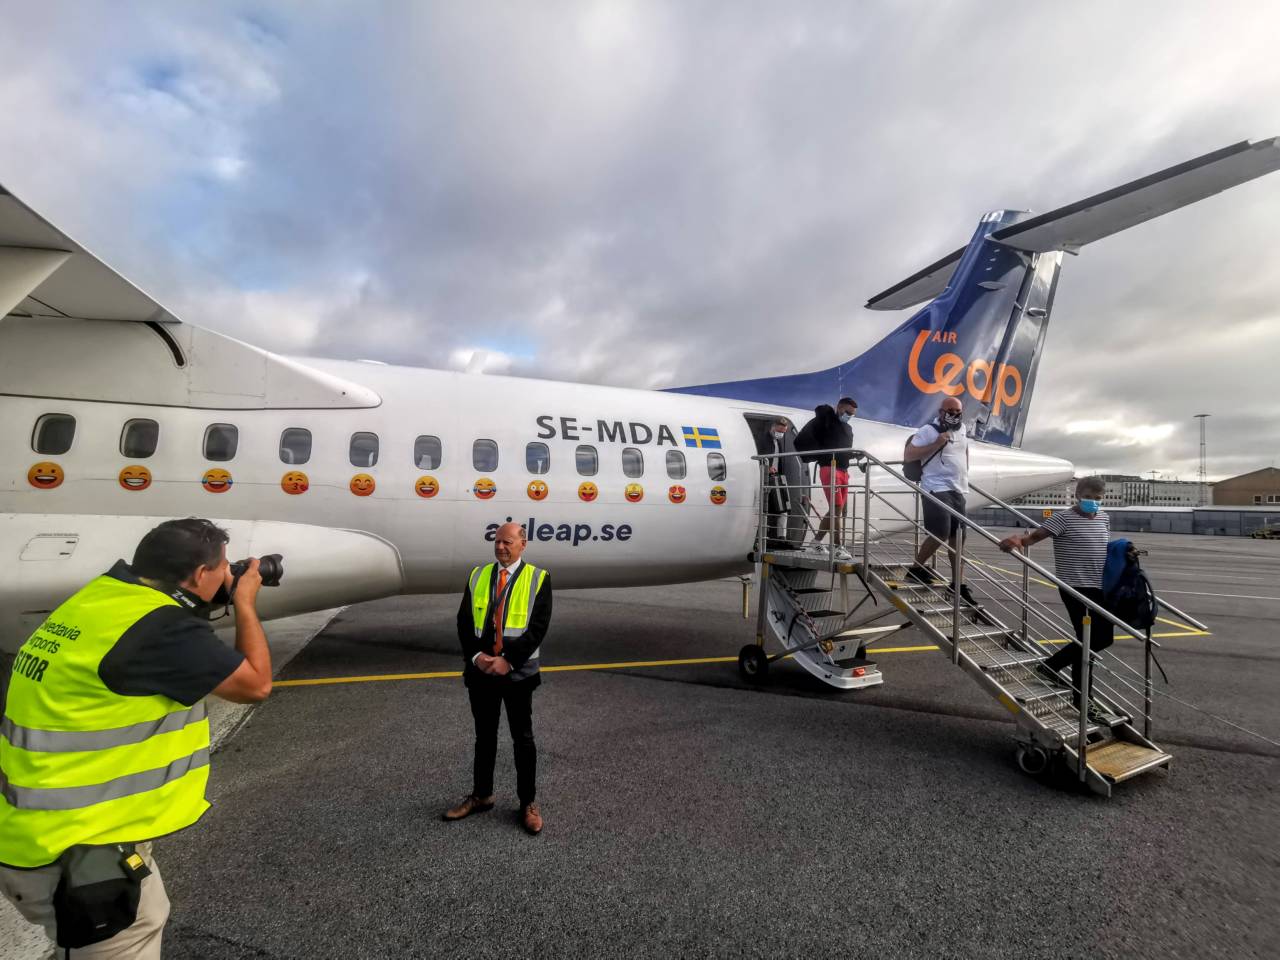 Air Leap anpassar avgångarna från Visby till Arlanda - Travel News